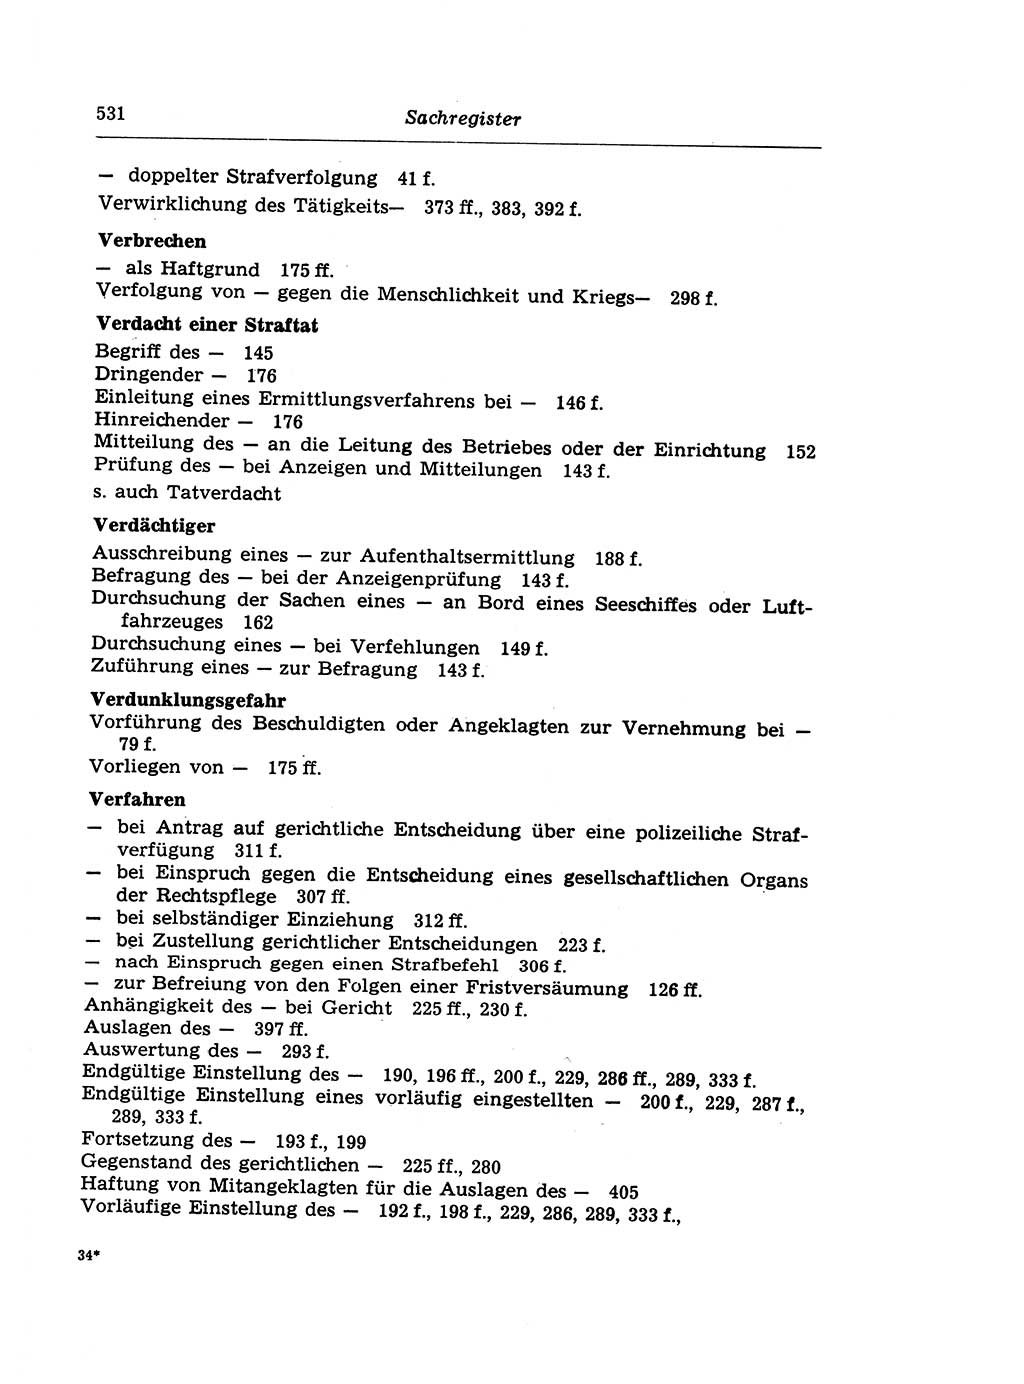 Strafprozeßrecht der DDR (Deutsche Demokratische Republik), Lehrkommentar zur Strafprozeßordnung (StPO) 1968, Seite 531 (Strafprozeßr. DDR Lehrkomm. StPO 19688, S. 531)